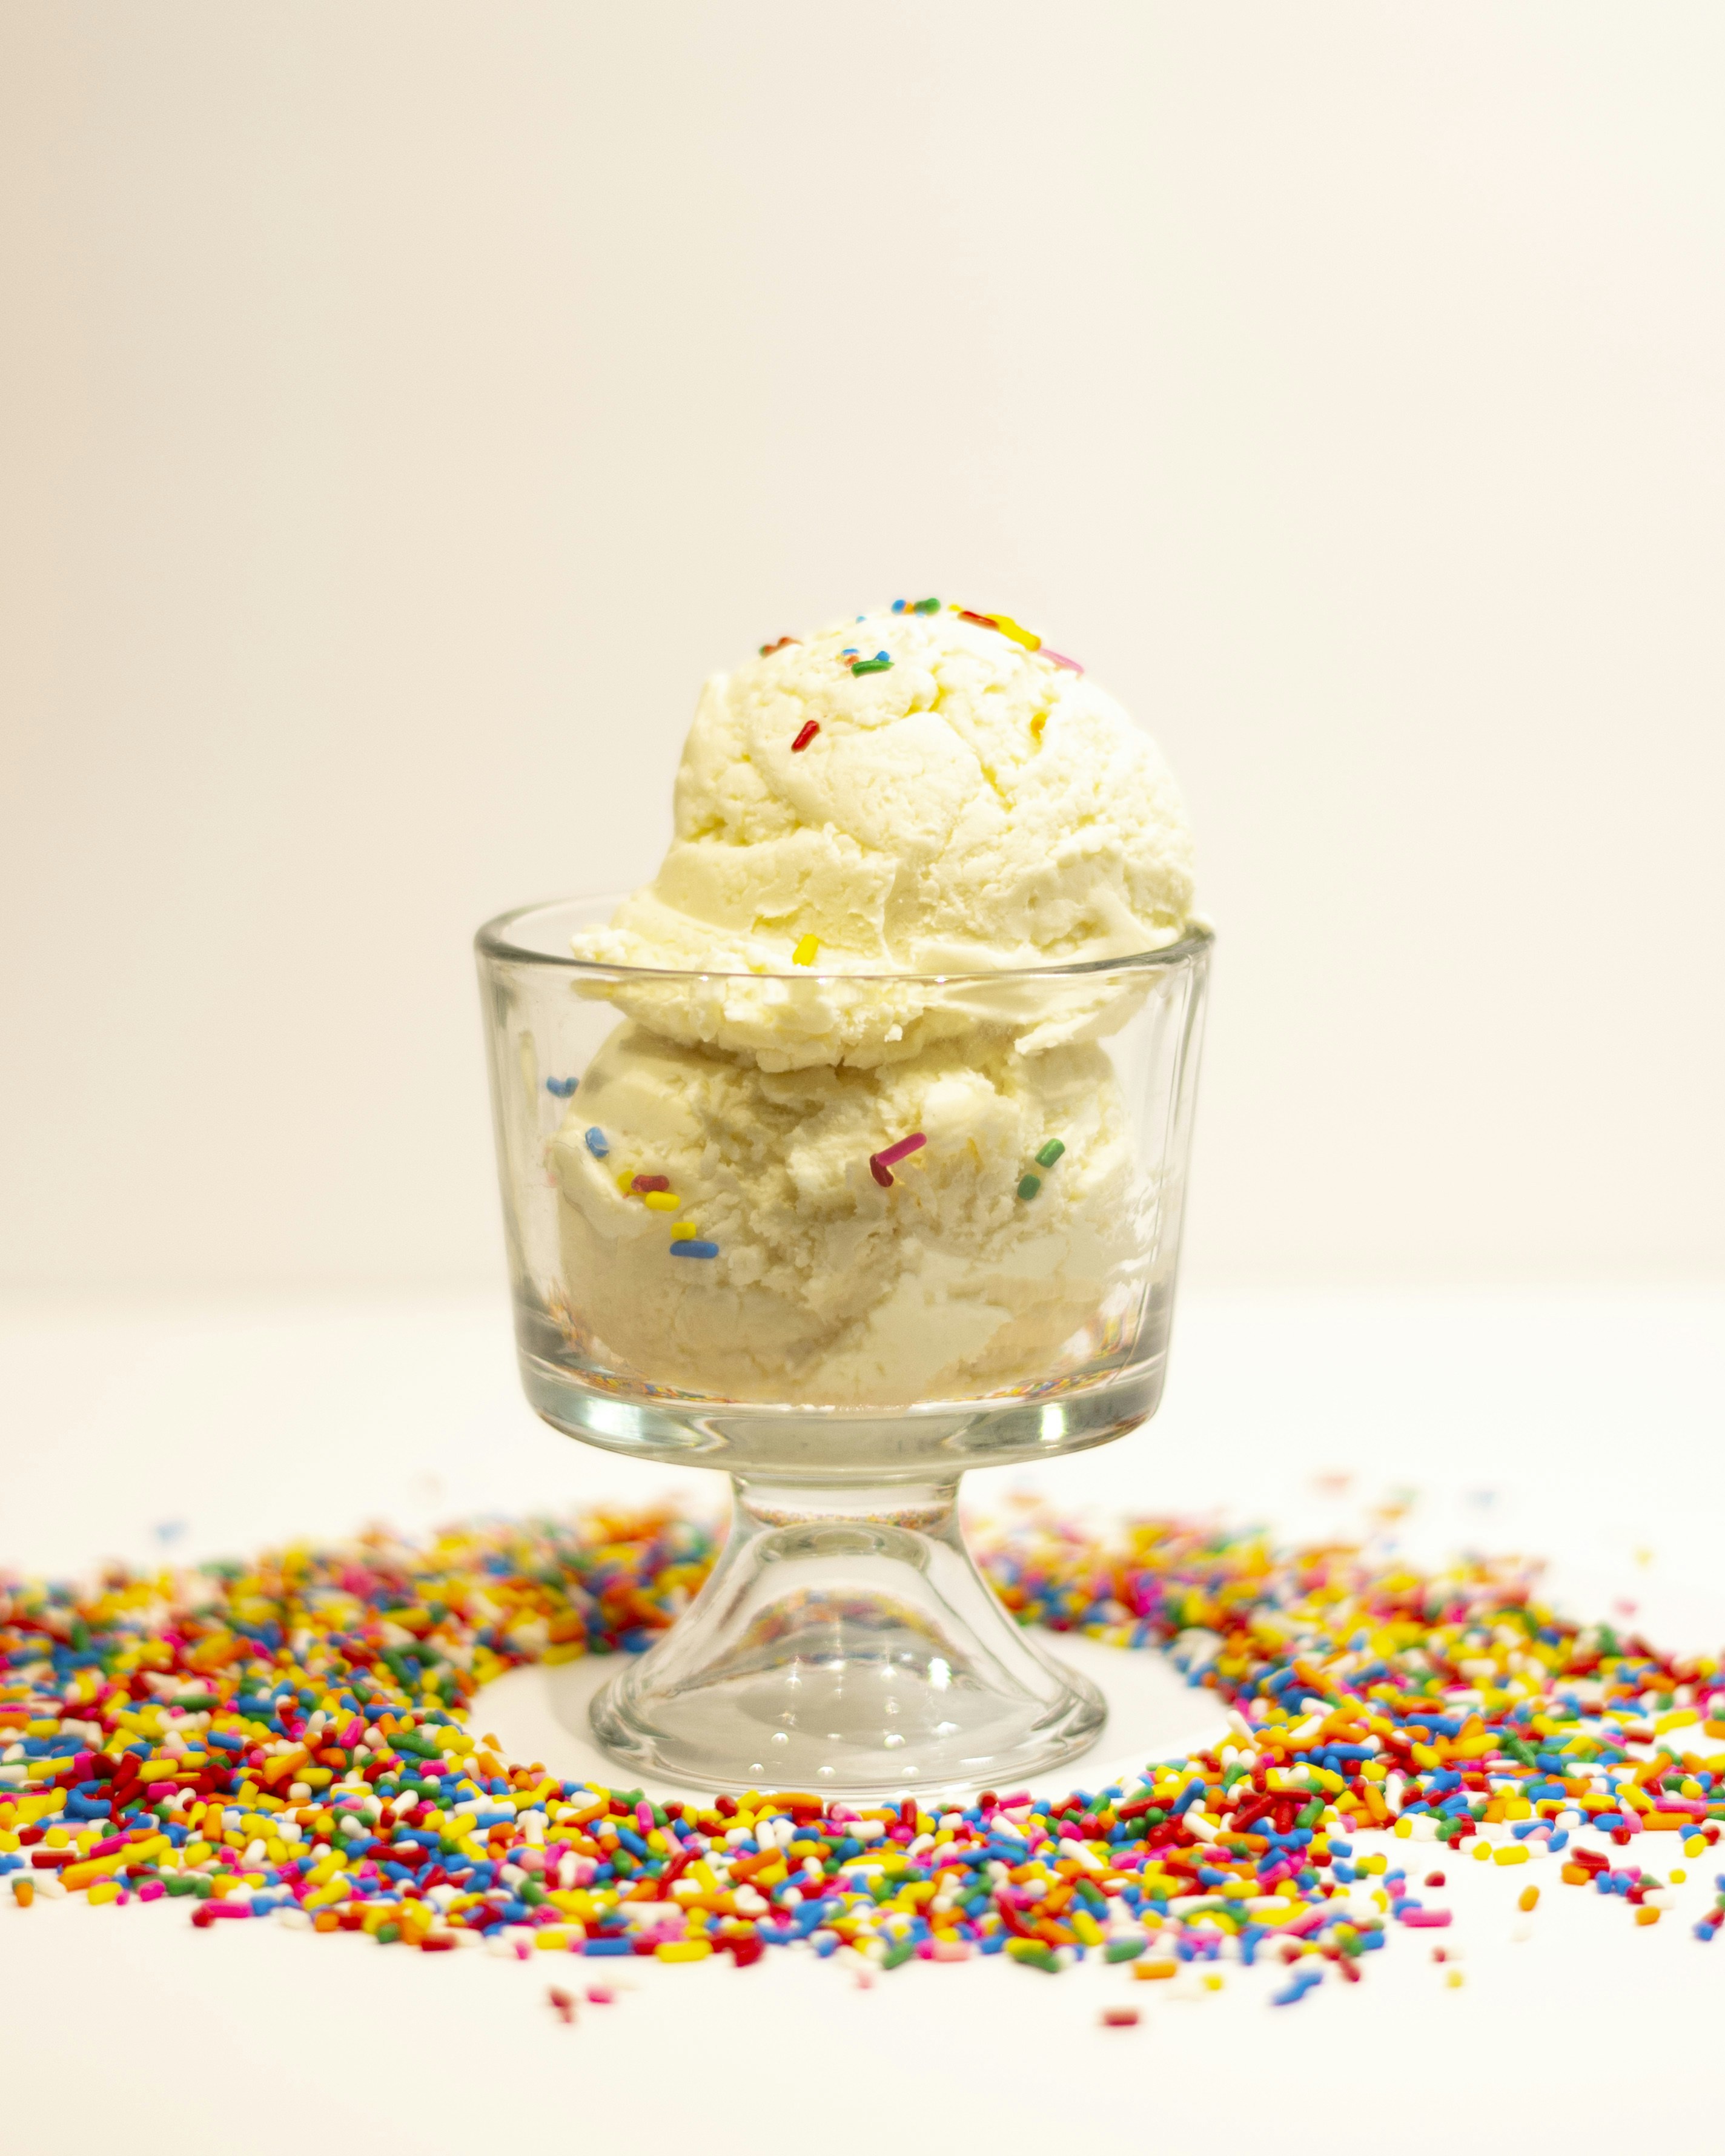 vanilla ice cream with rainbow sprinkles inside a sundae glass